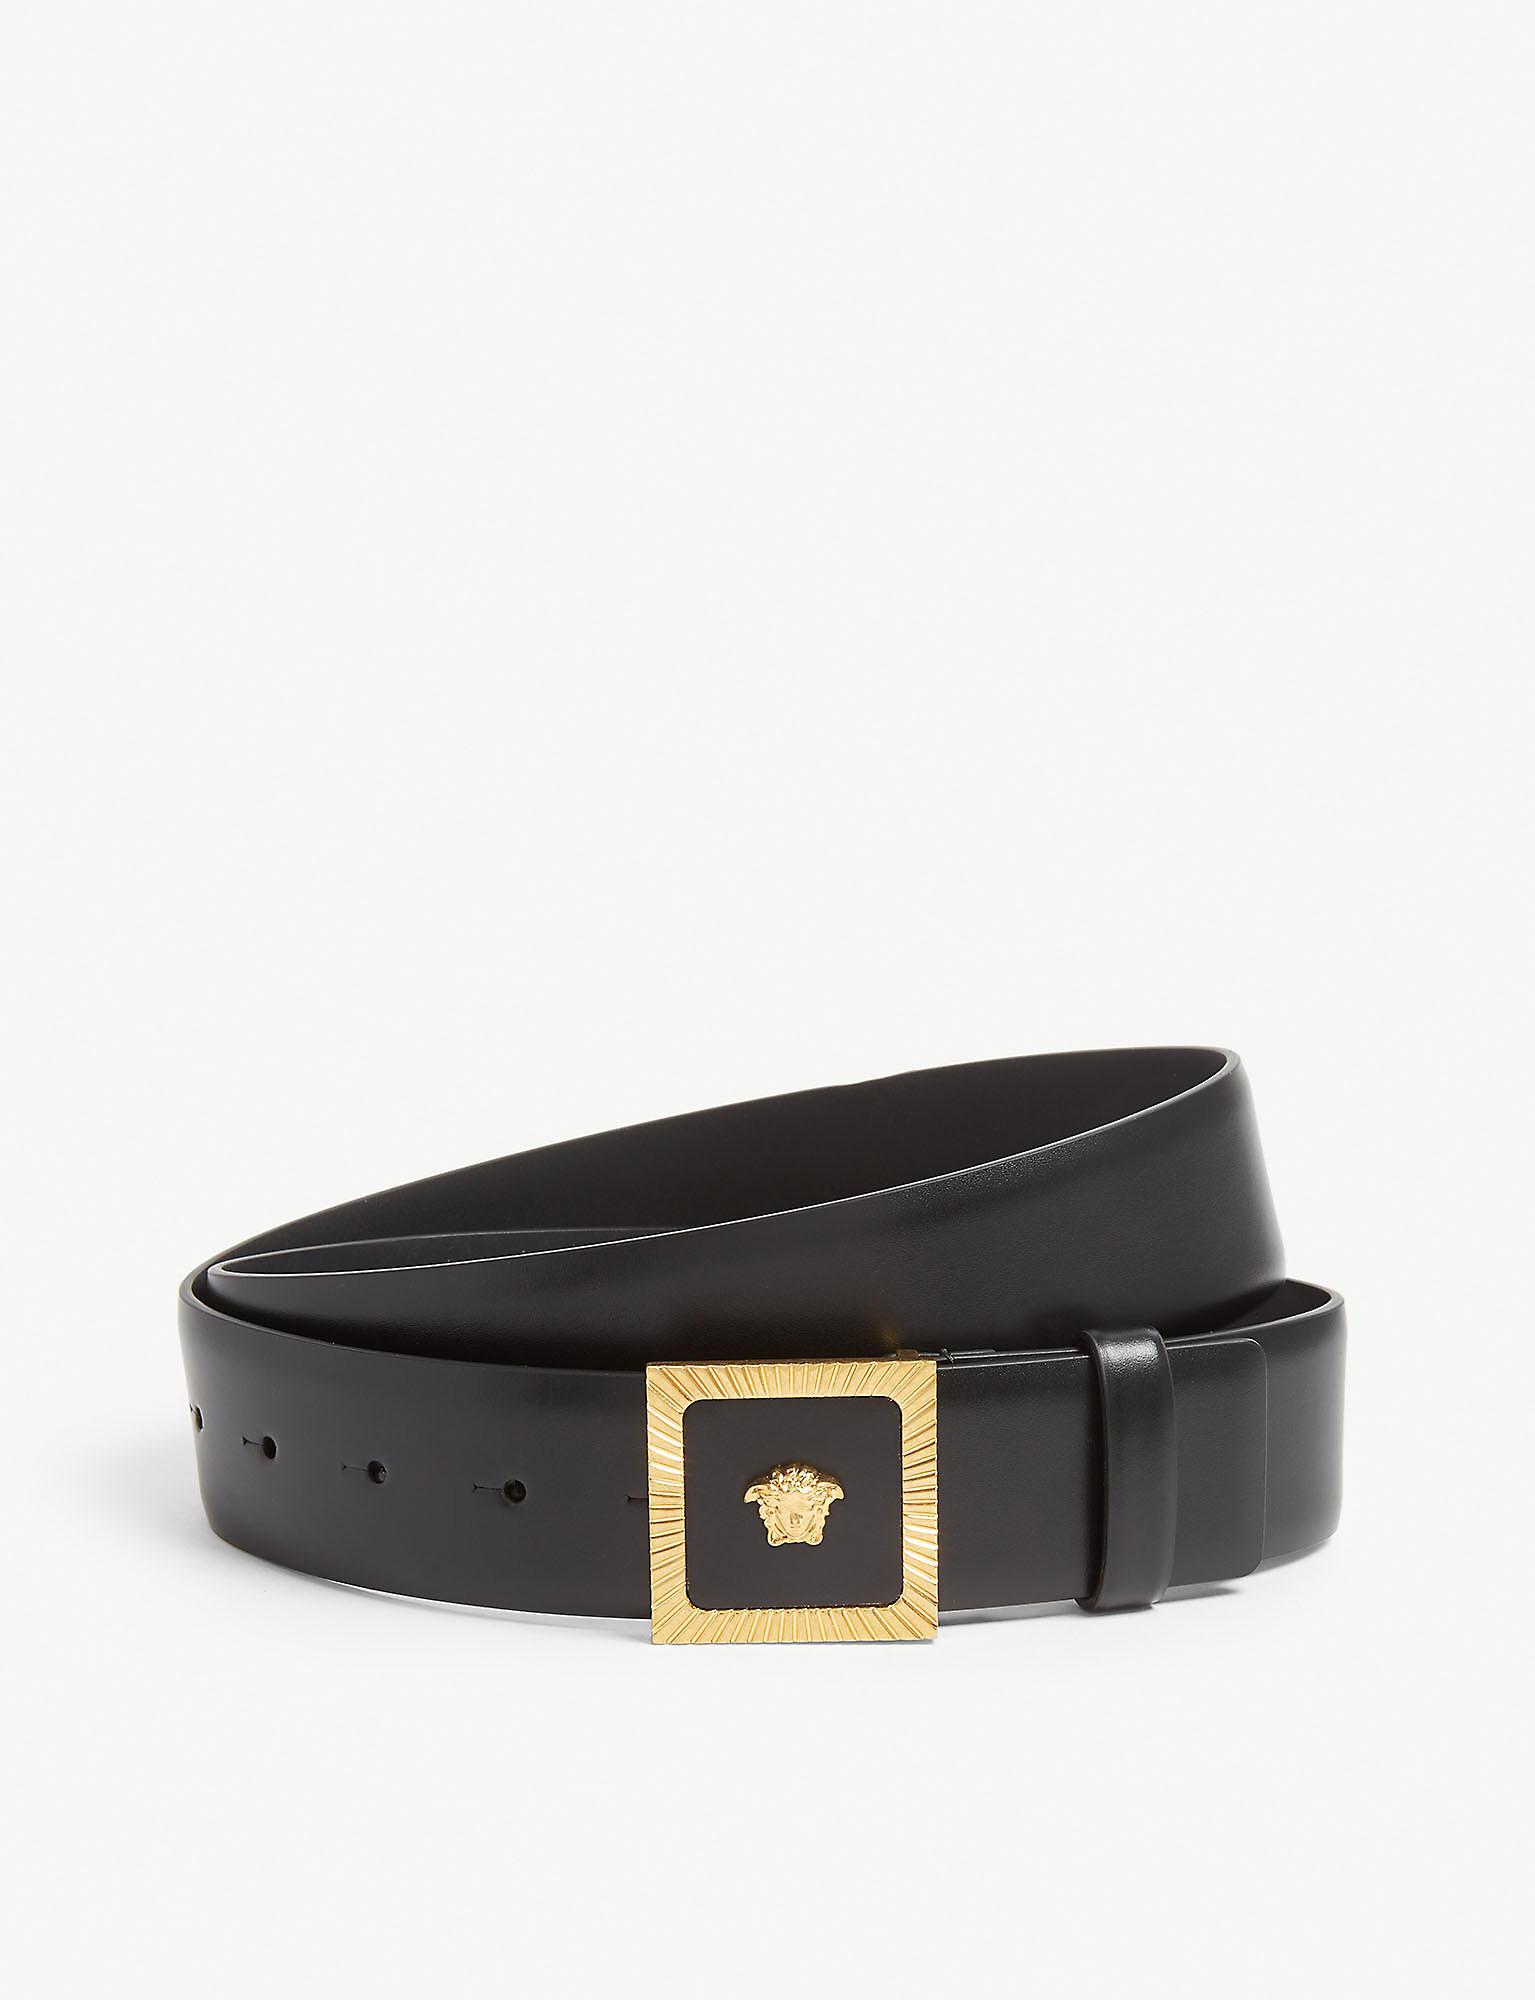 Versace Medusa Buckle Leather Belt in Gold Black (Black) for Men - Lyst